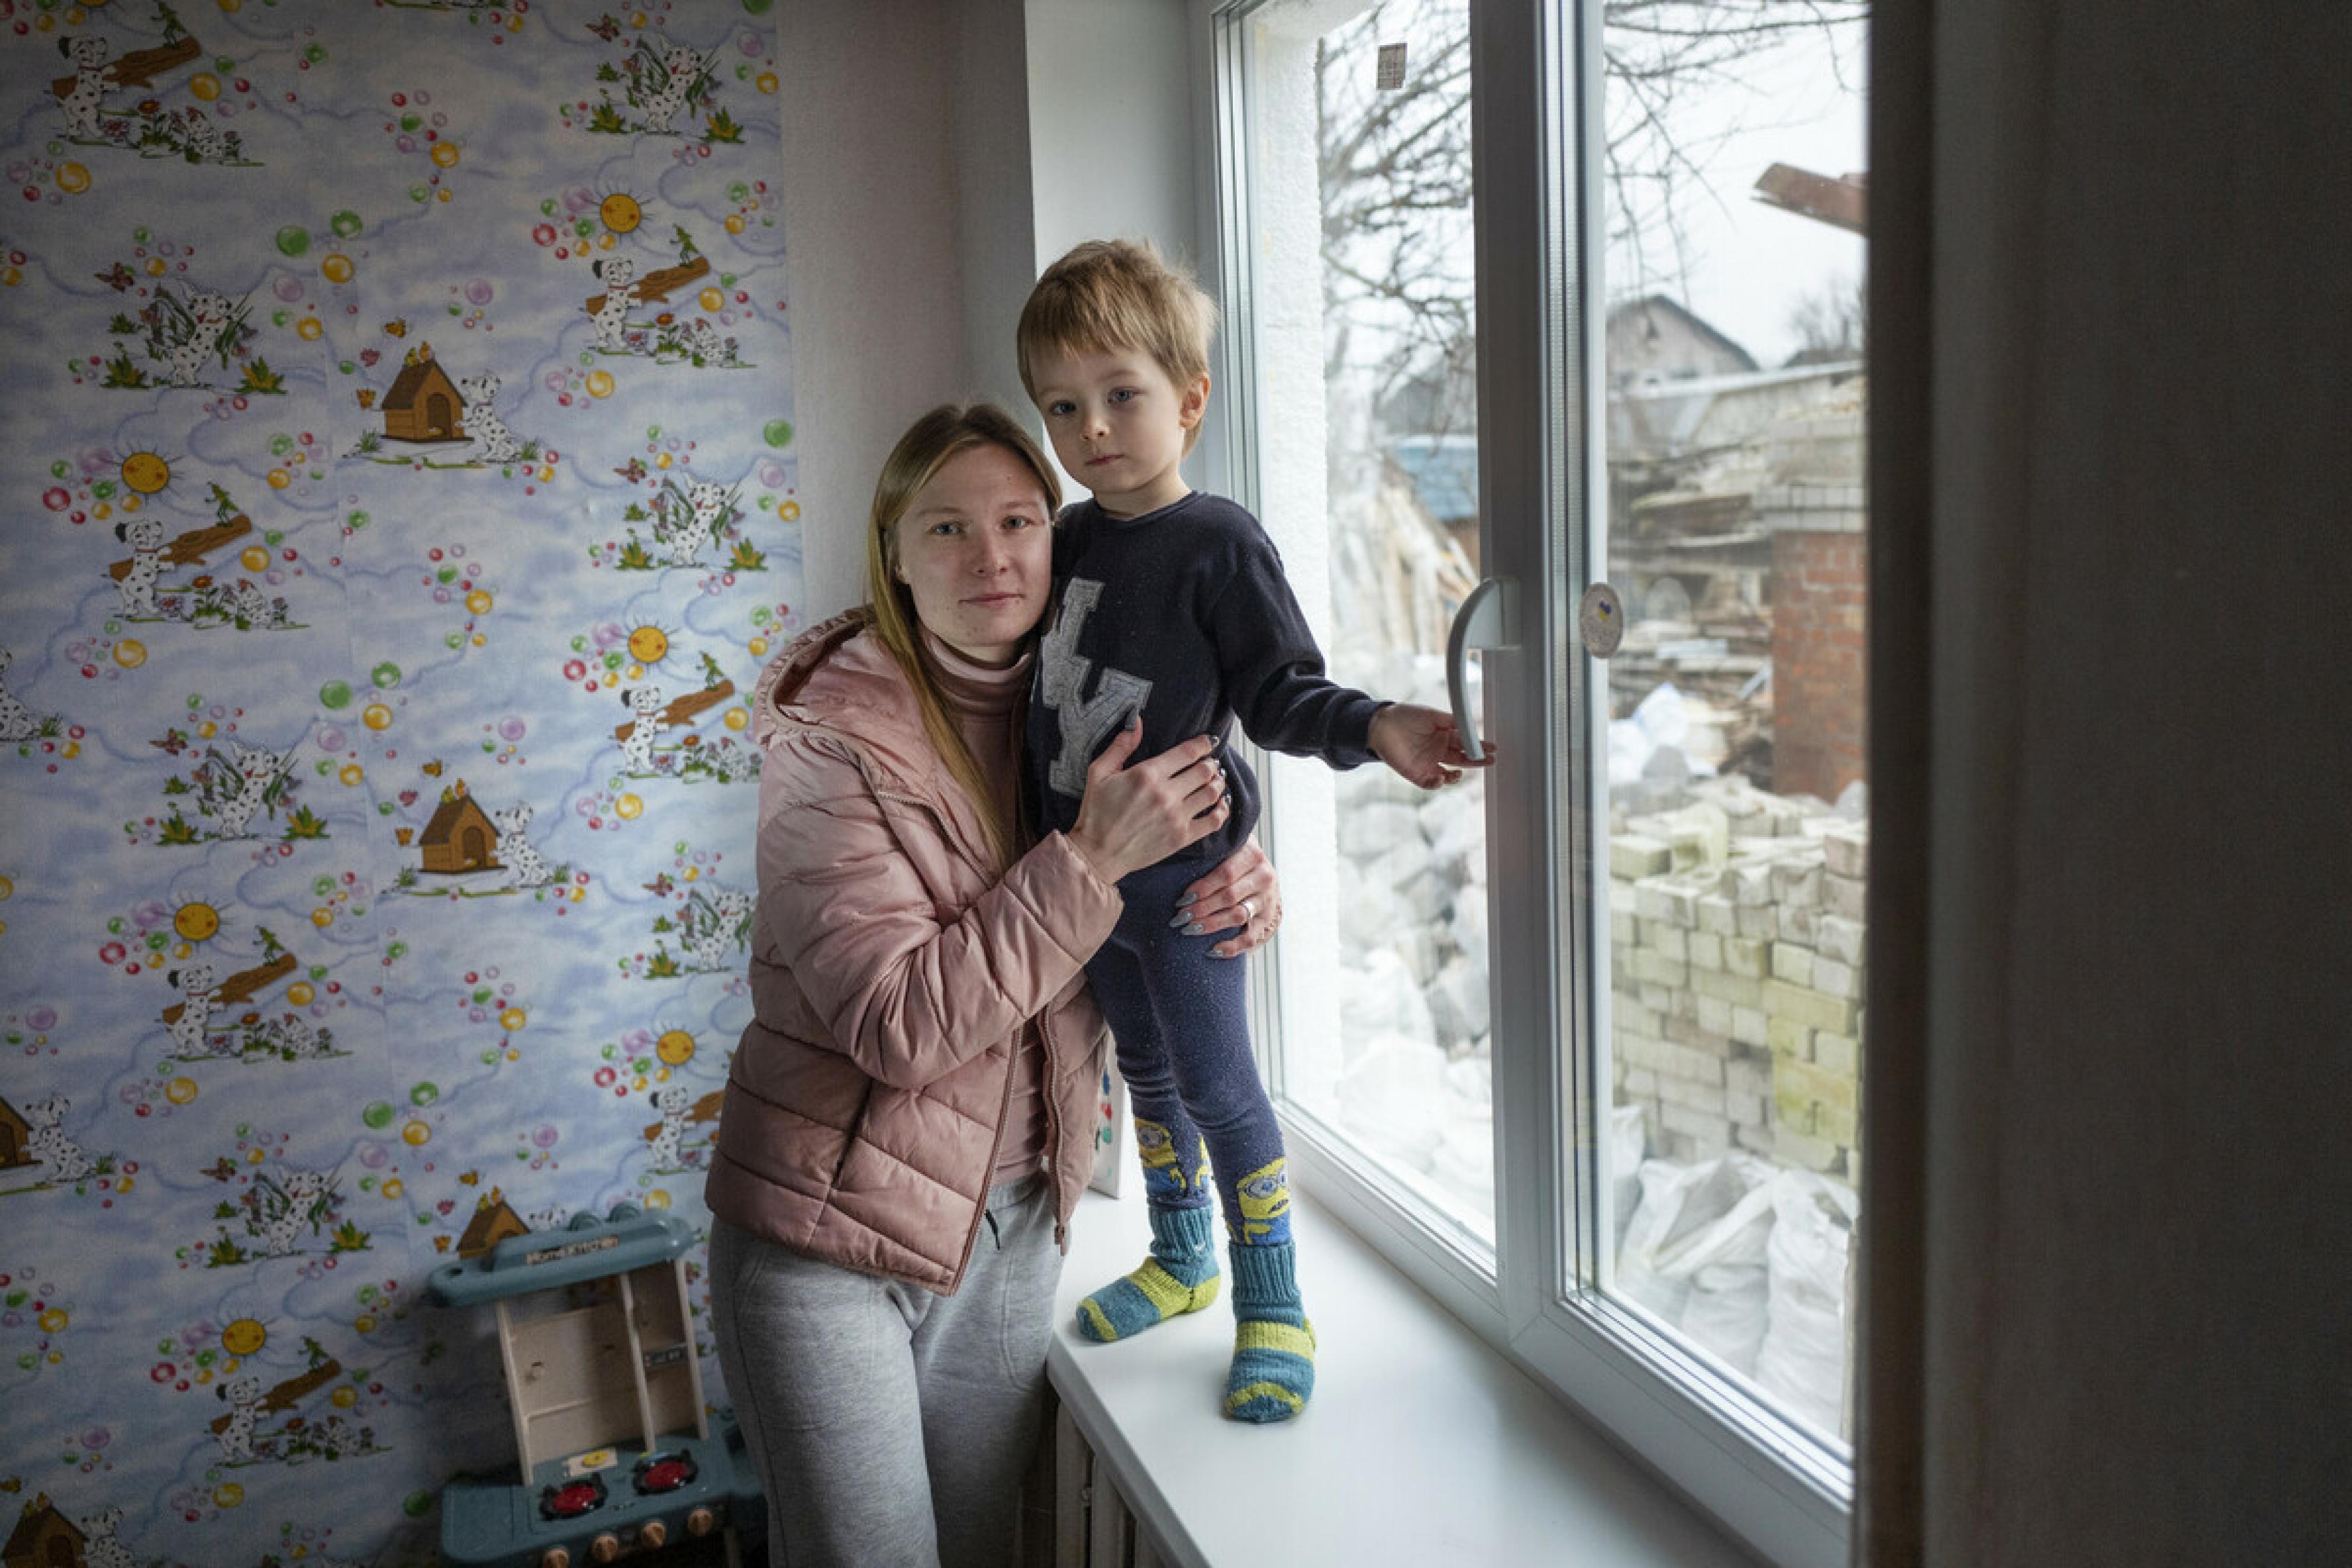 Ana Gendmalo und ihr Sohn Serhiy stehen vor einem neu eingebauten Fenster im Kinderzimmer. Sie schauen ernst in die Kamera.